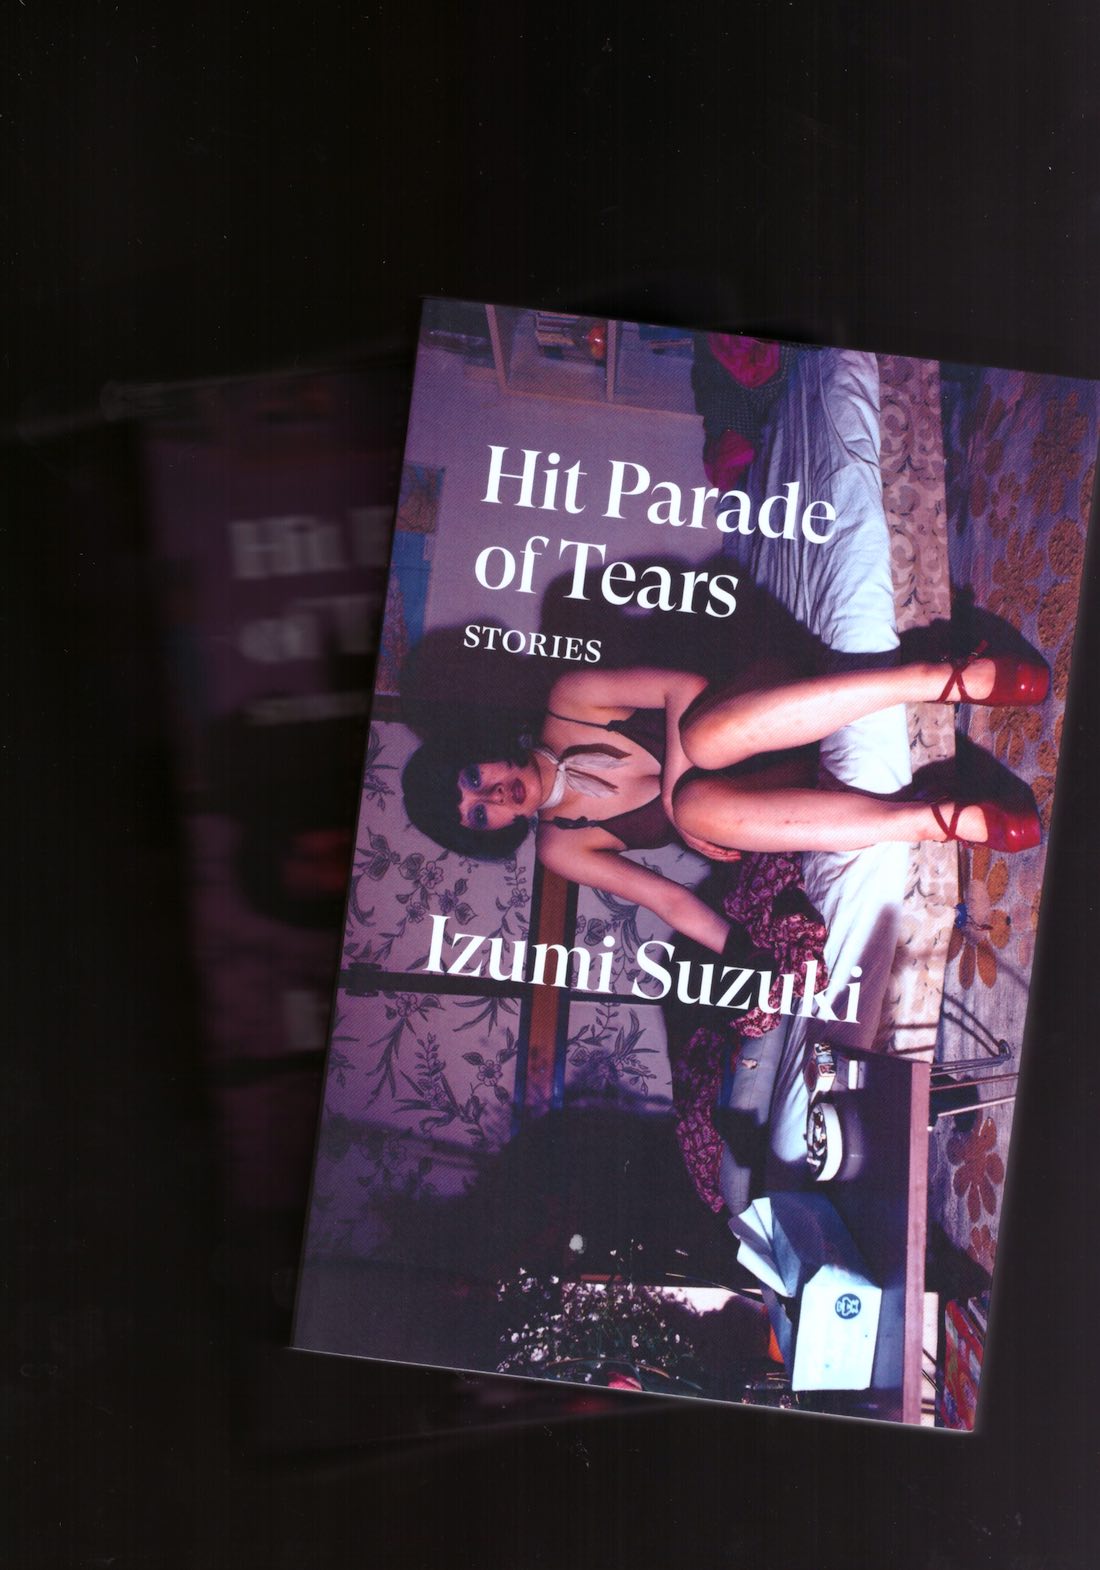 SUZUKI, Isumi - Hit Parade of Tears